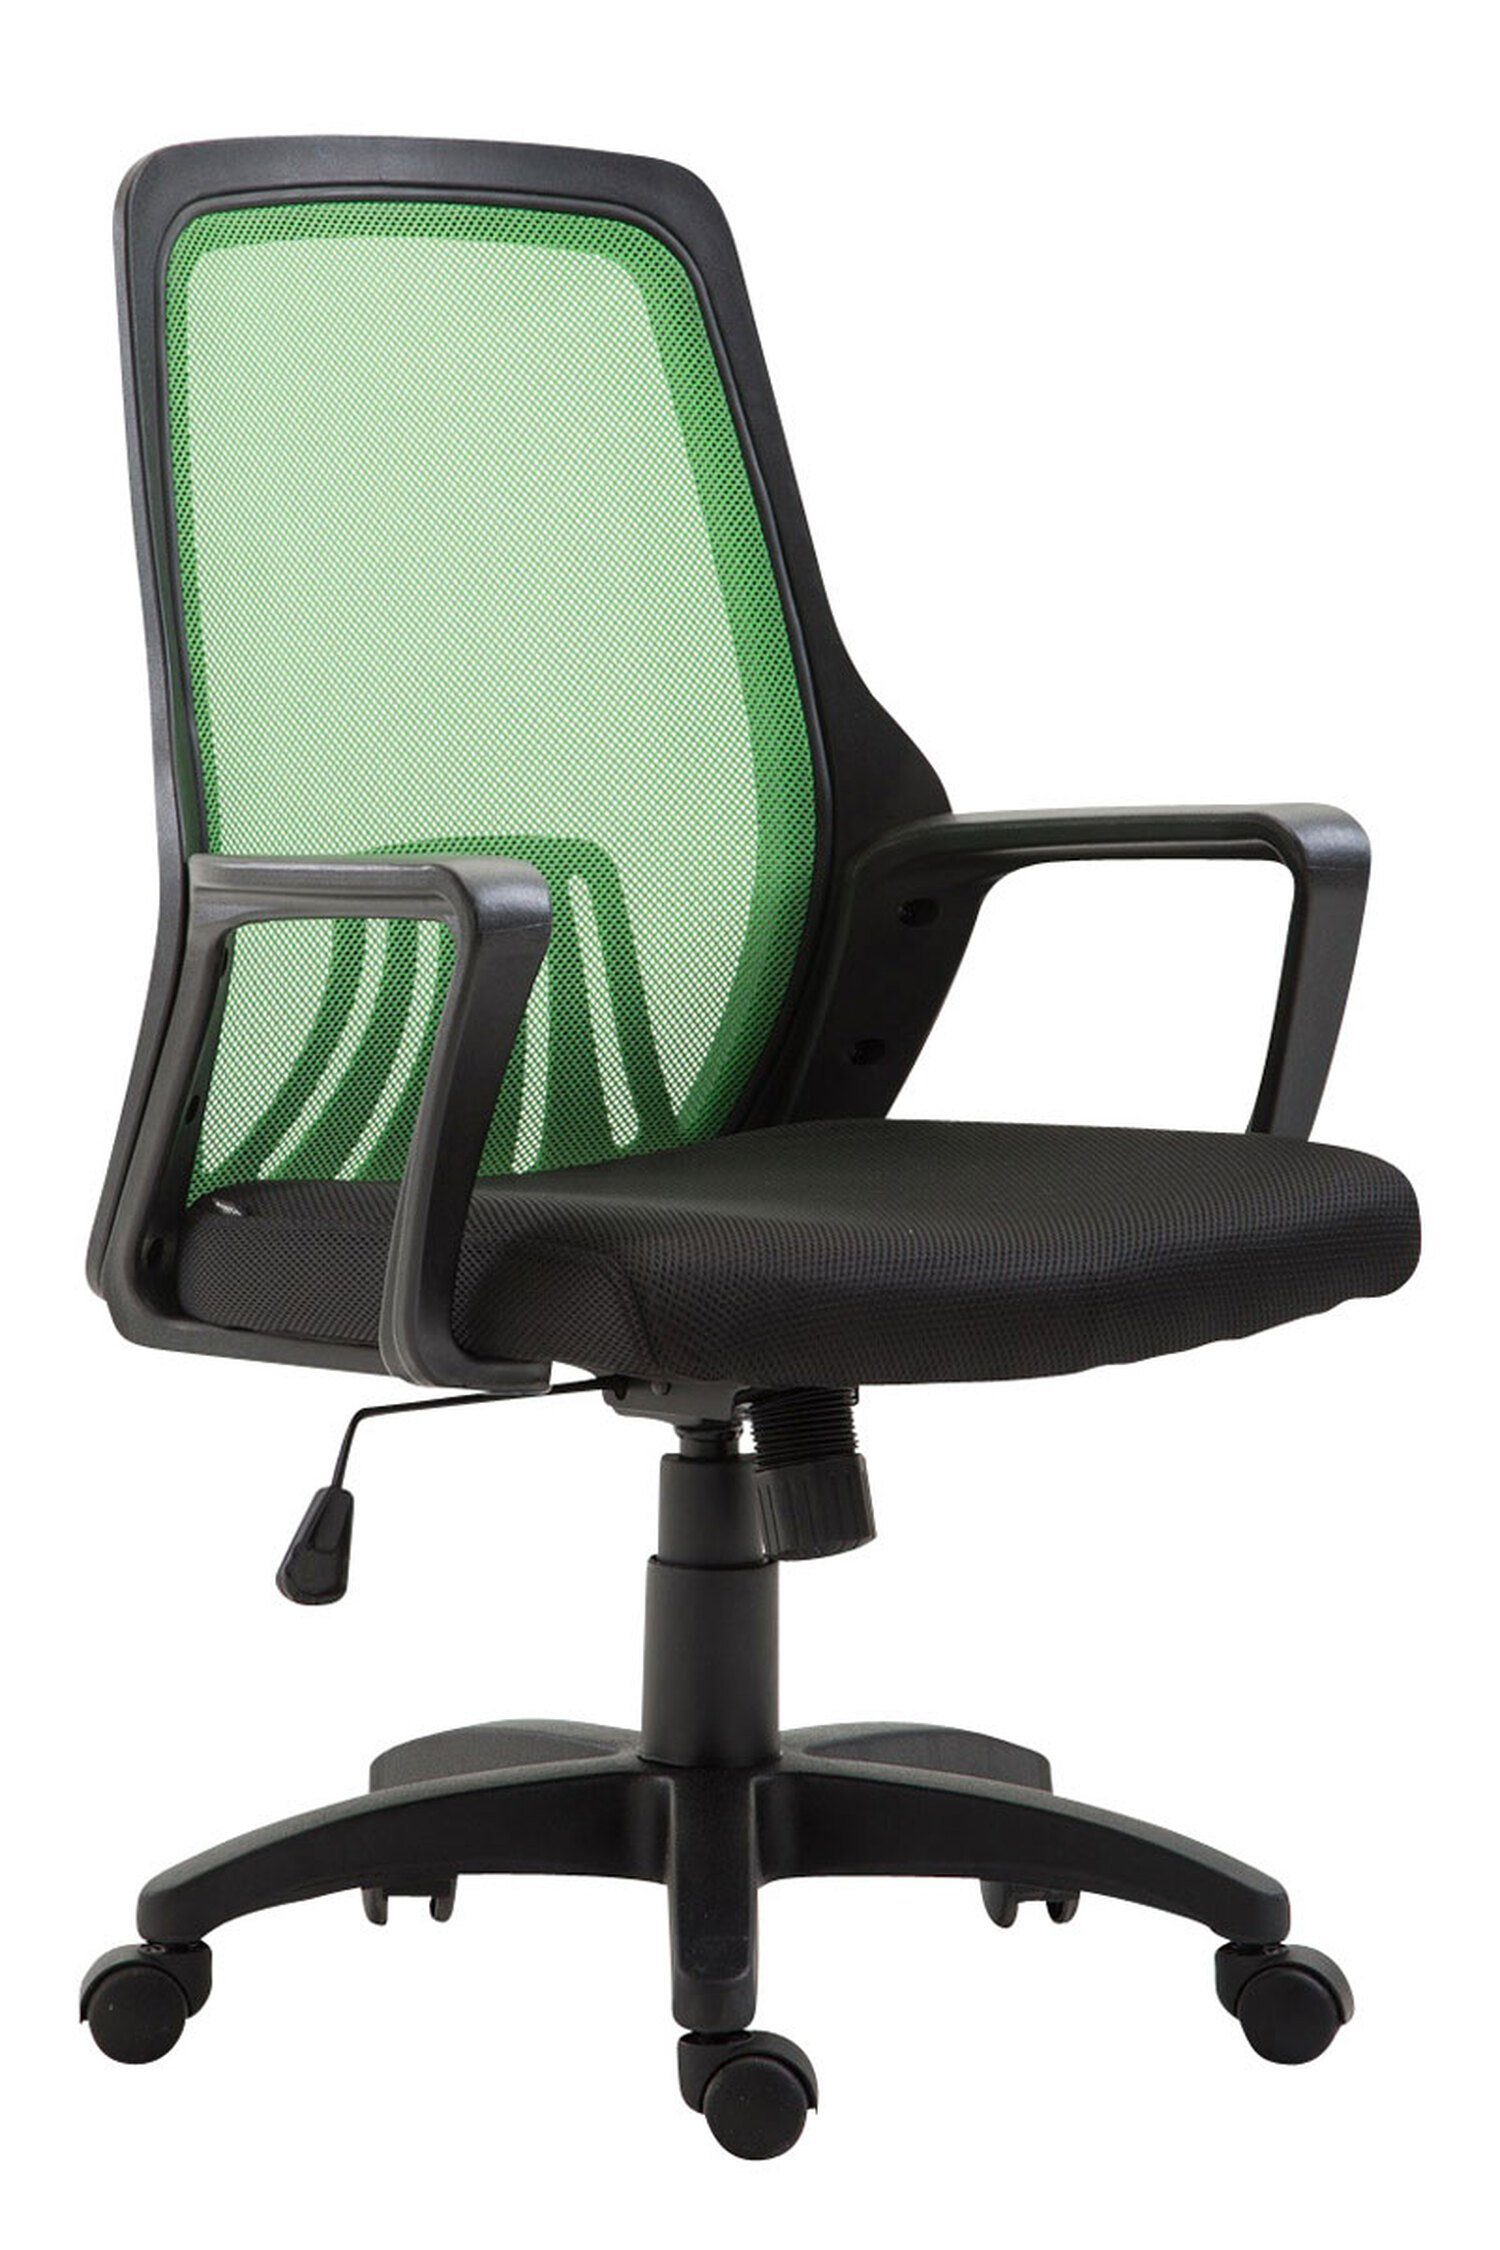 TPFLiving Gaming-Stuhl Cleveland mit bequemer Rückenlehne und  atmungsaktivem Netzbezugr (Schreibtischstuhl, Drehstuhl, Chefsessel,  Bürostuhl XXL), Gestell: Kunststoff schwarz - Sitzfläche: Netzbezug schwarz/ grün